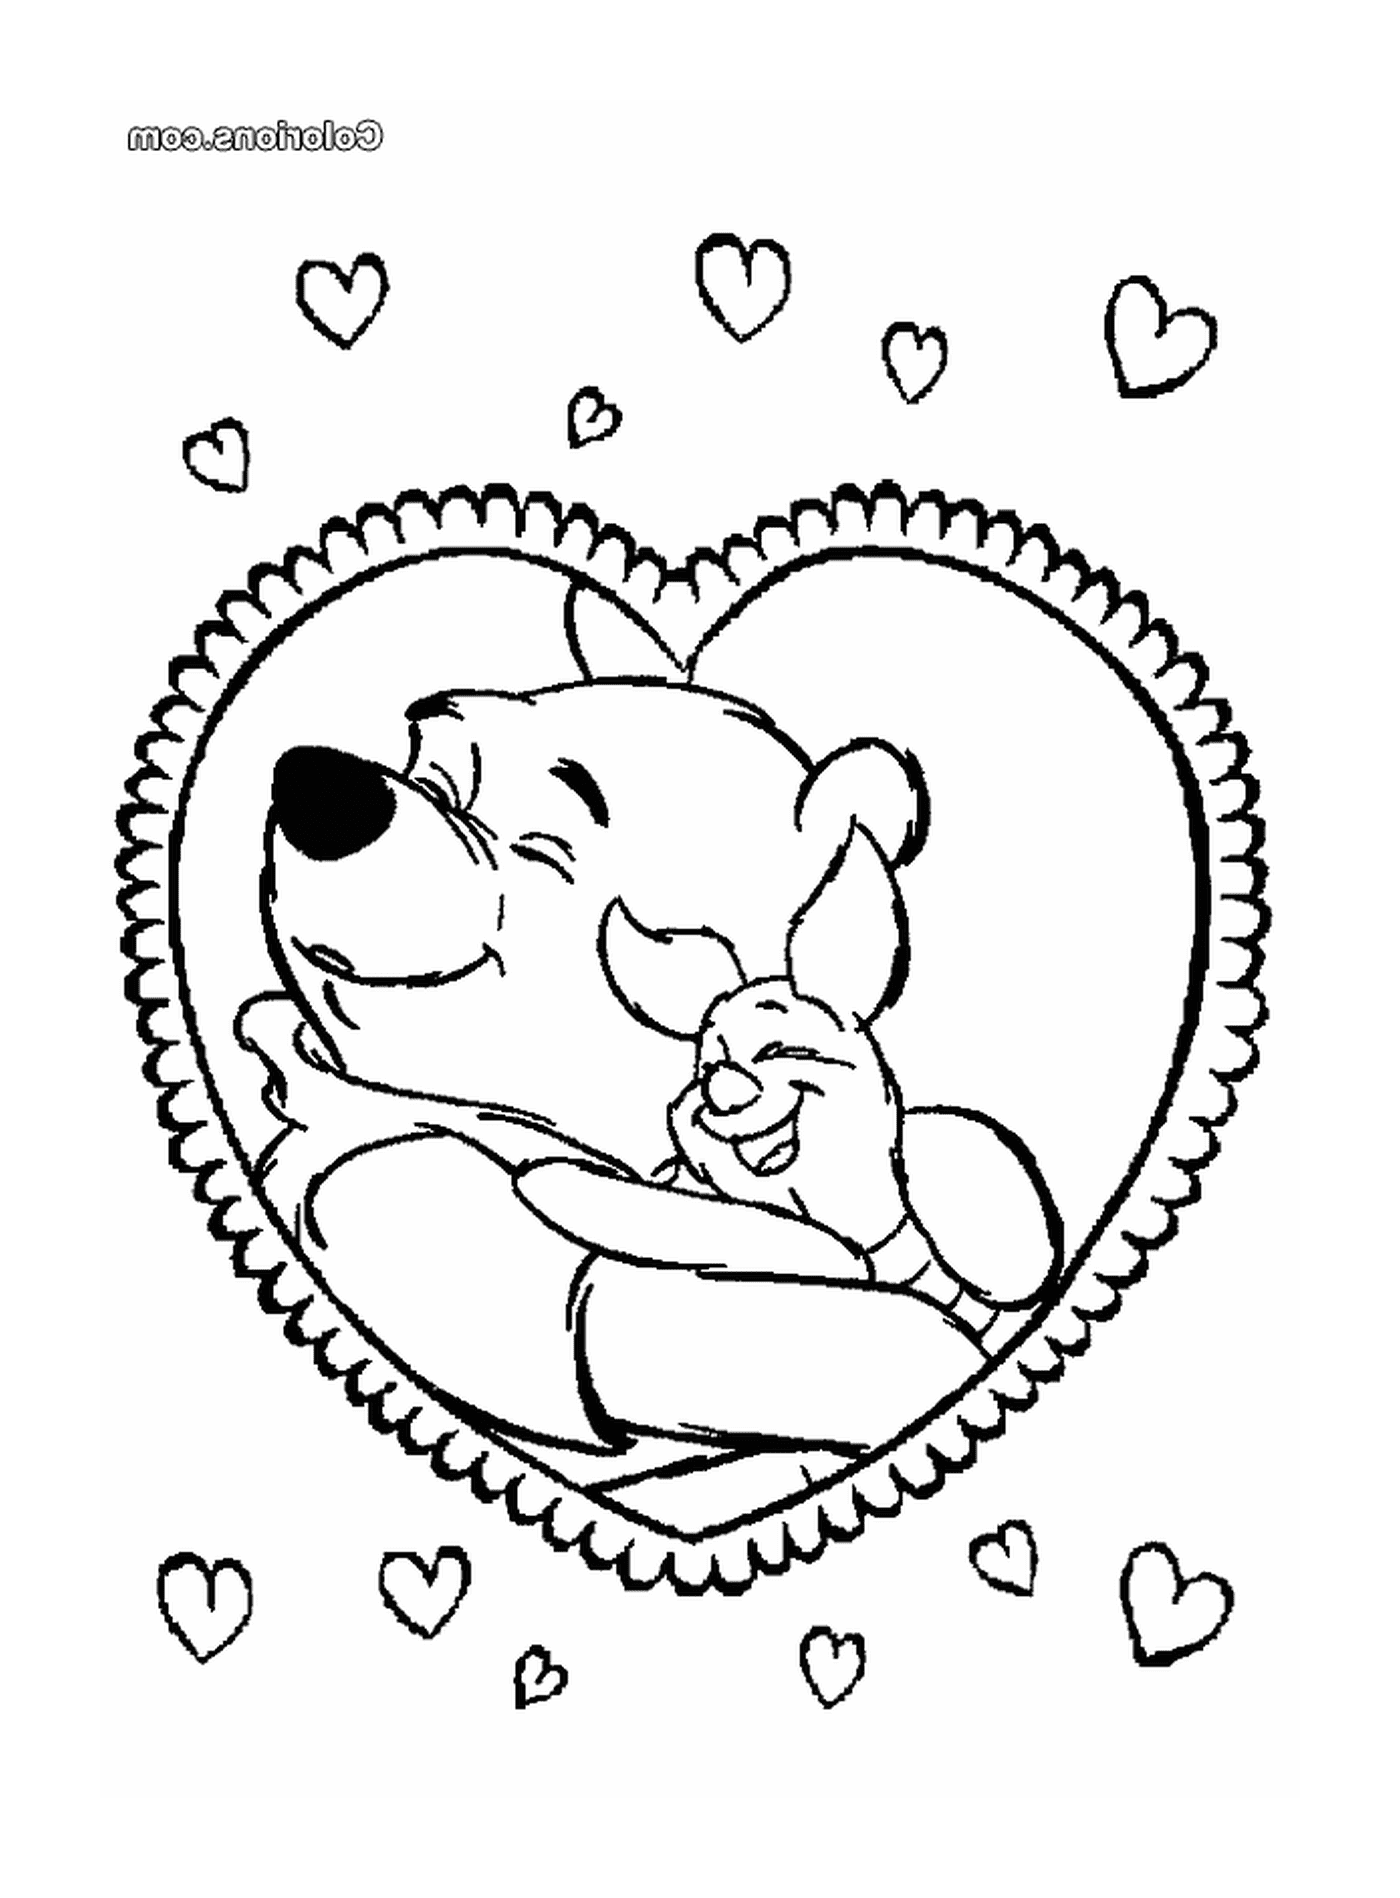  San Valentino, orso in un cuore 